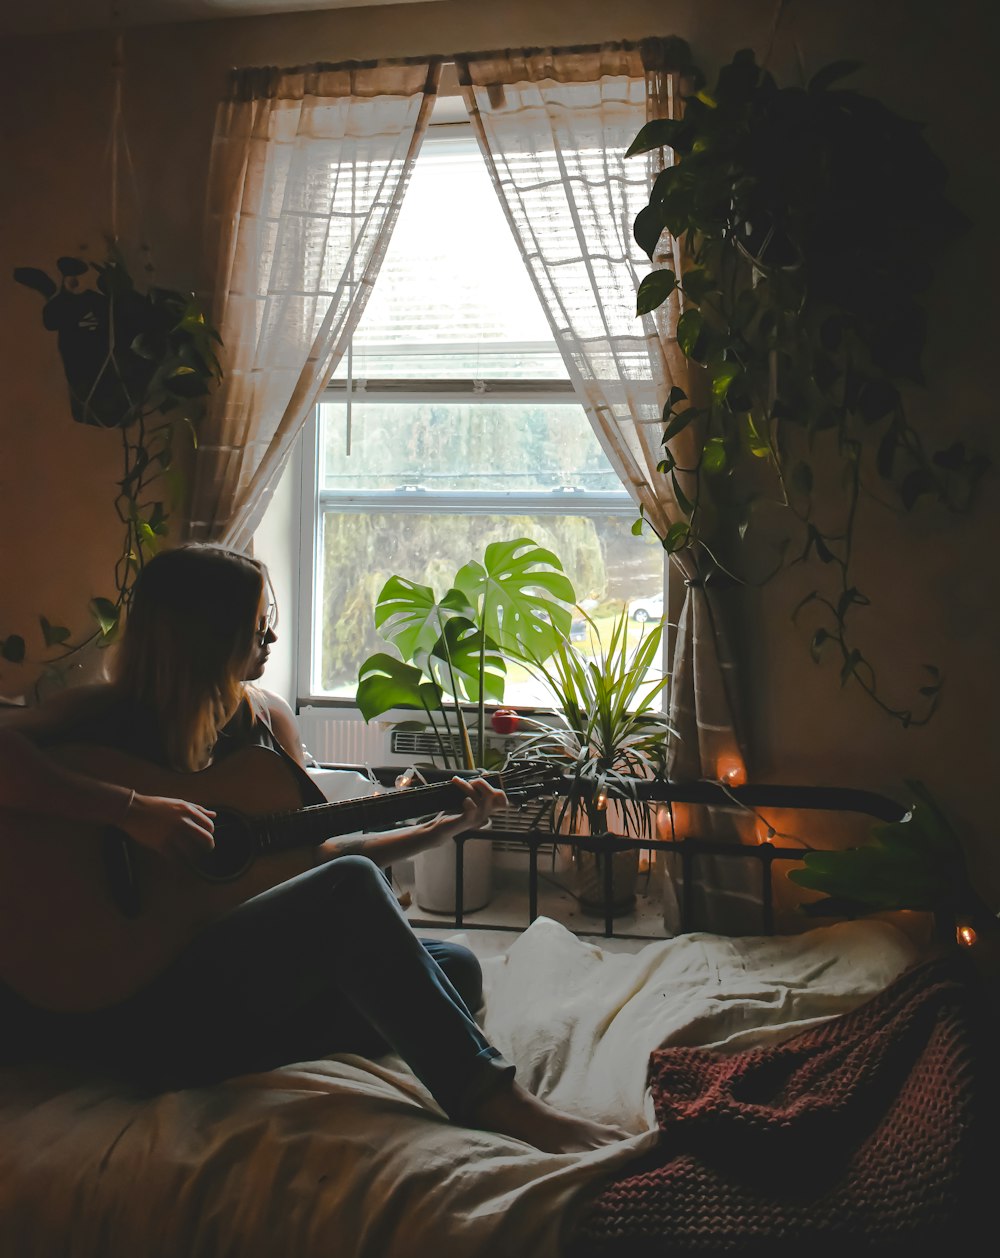 Une femme assise sur un lit jouant de la guitare